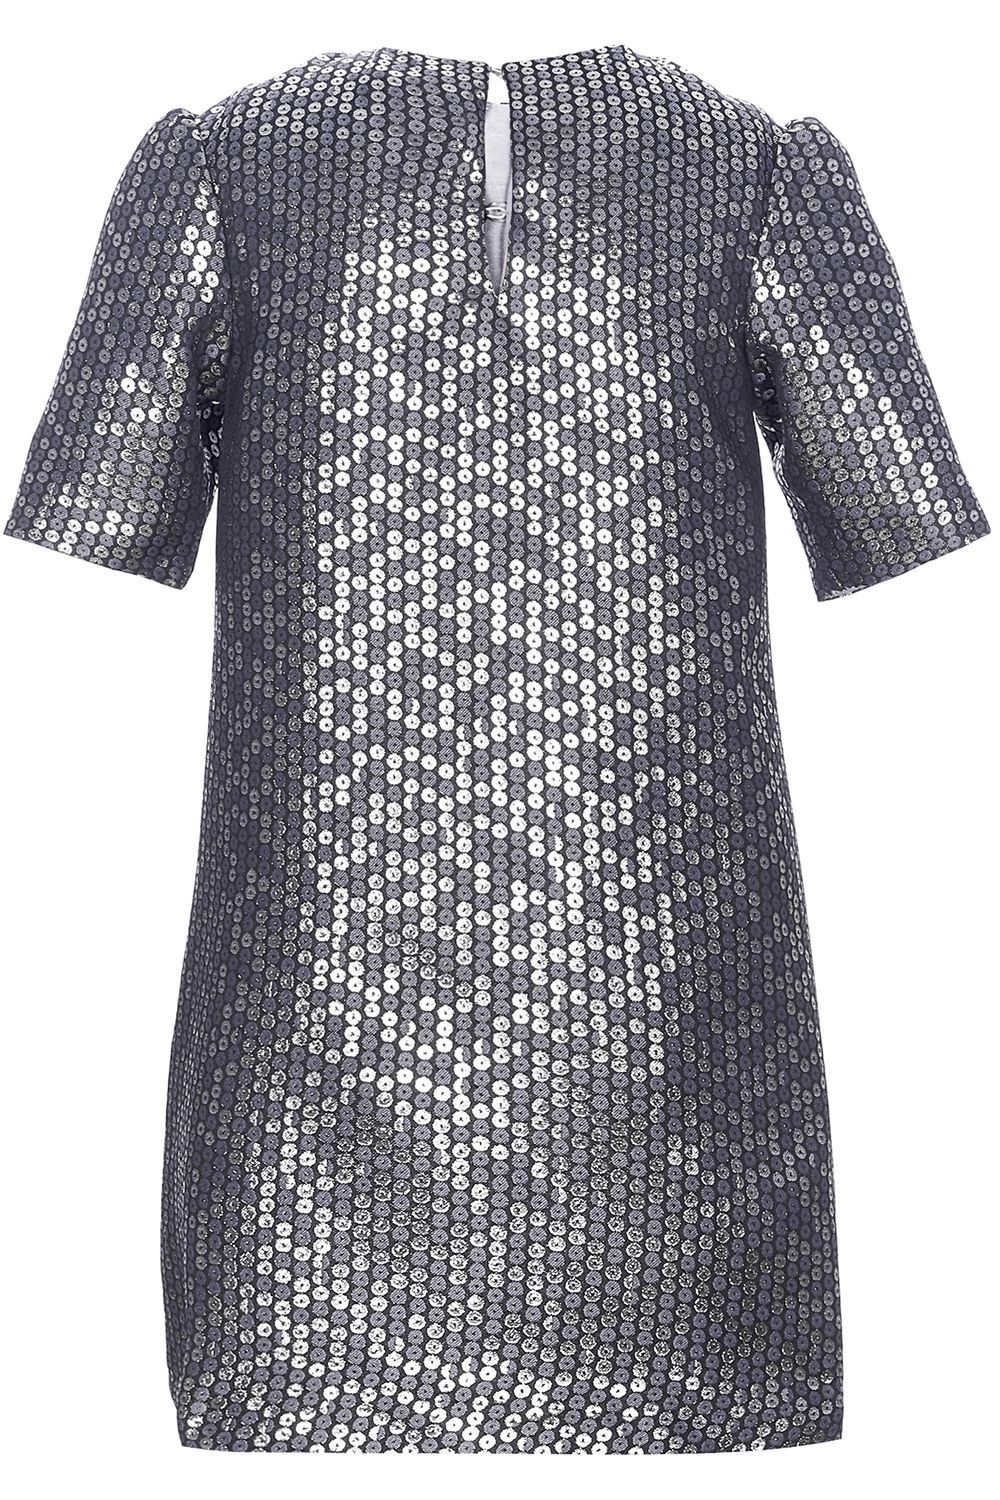 Платье Silver Spoon, размер 152, цвет серый SNFWG-939-23624-941 - фото 3